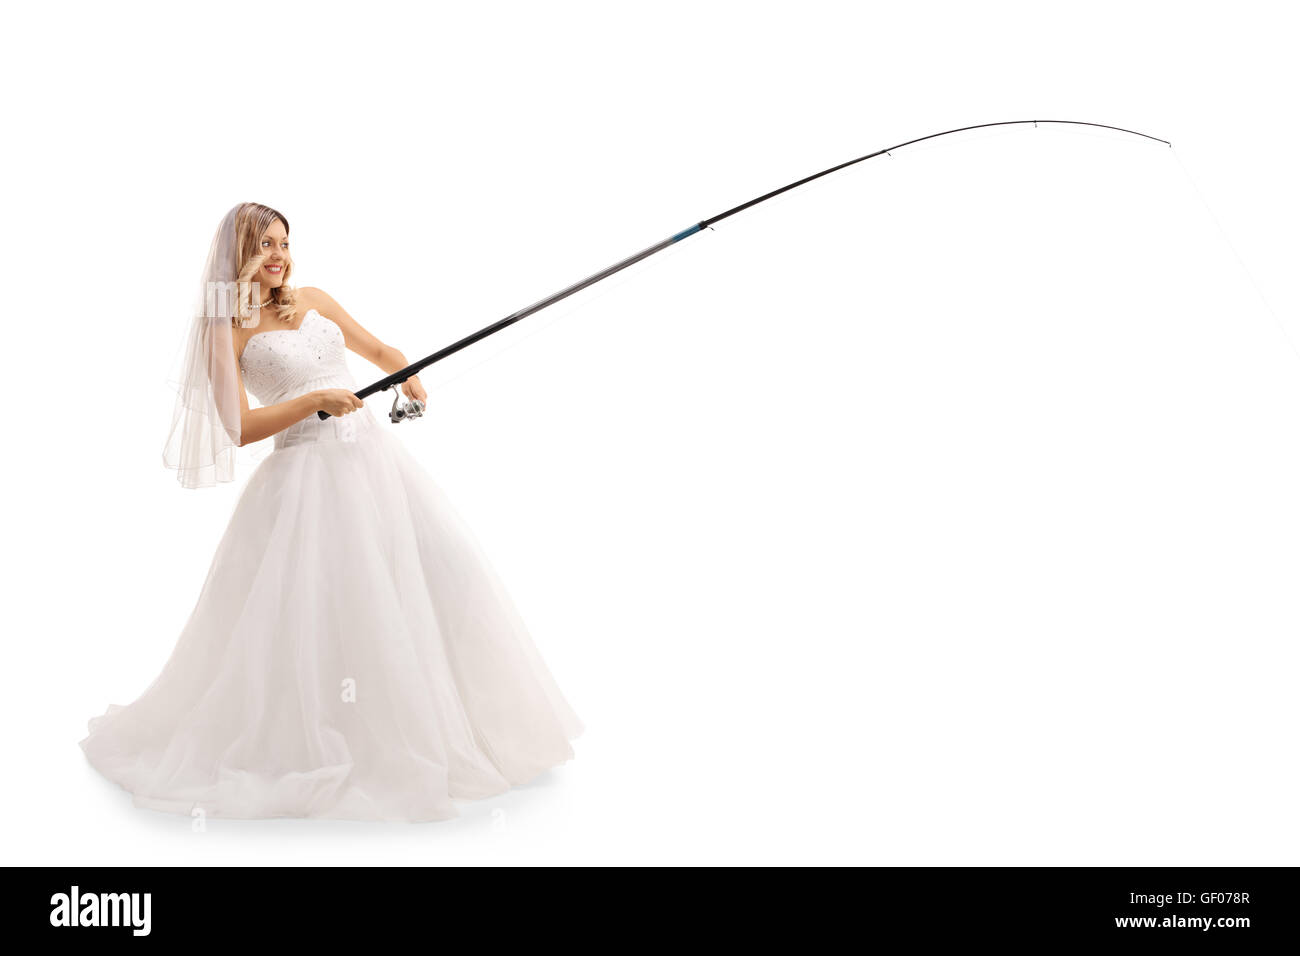 Jeune mariée joyeuse dans une robe de mariage la pêche avec une canne isolé sur fond blanc Banque D'Images